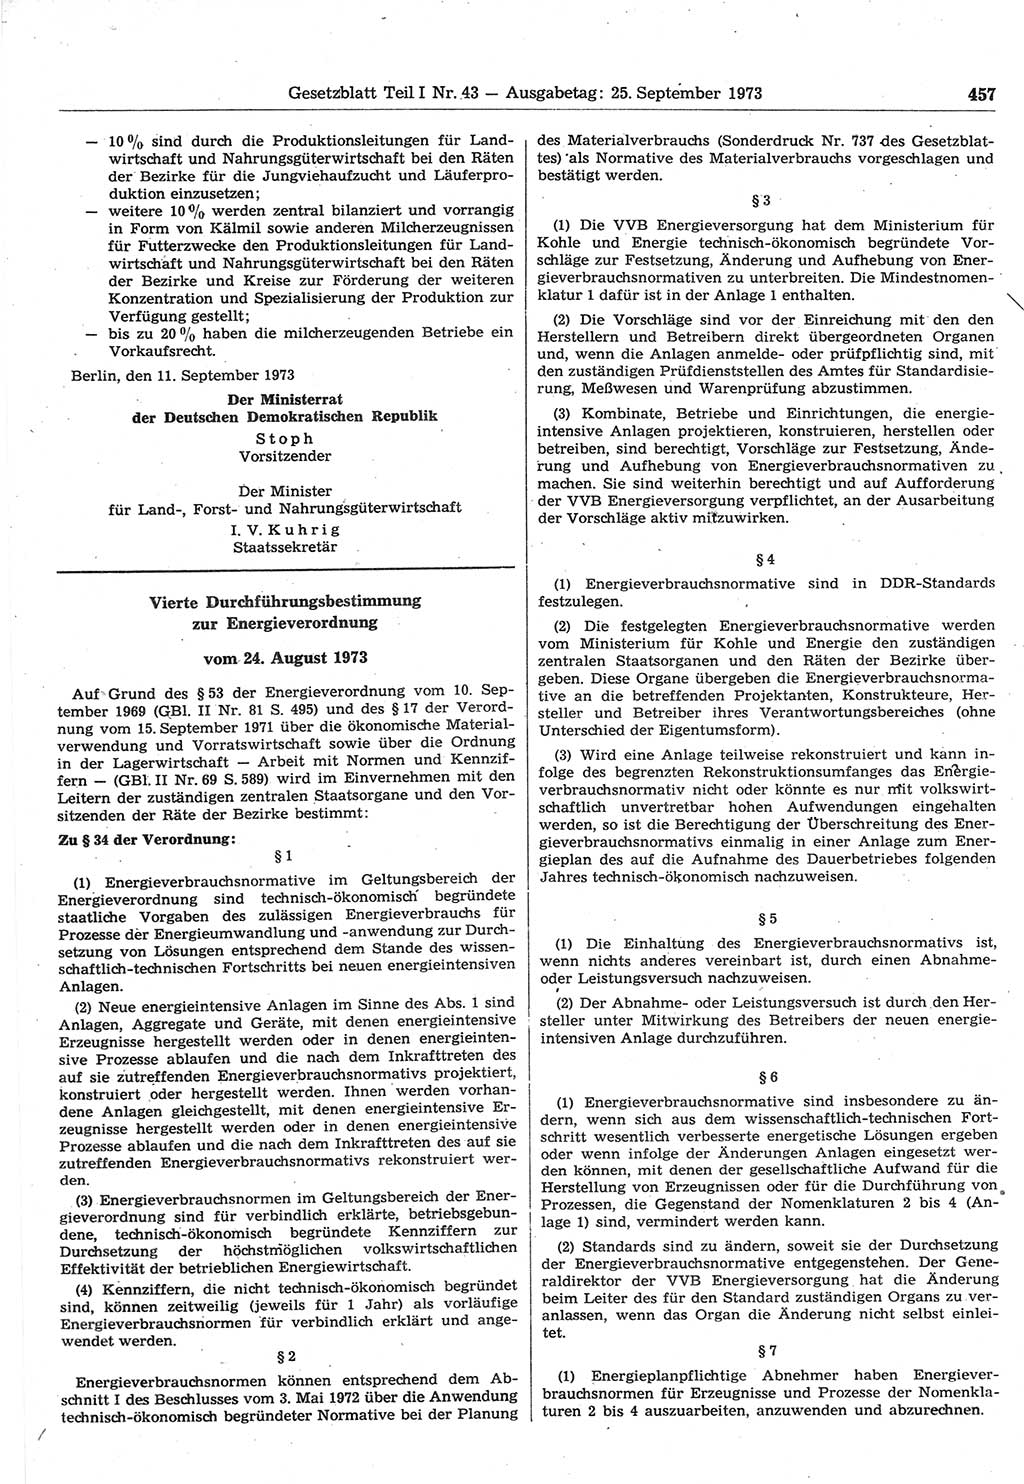 Gesetzblatt (GBl.) der Deutschen Demokratischen Republik (DDR) Teil Ⅰ 1973, Seite 457 (GBl. DDR Ⅰ 1973, S. 457)